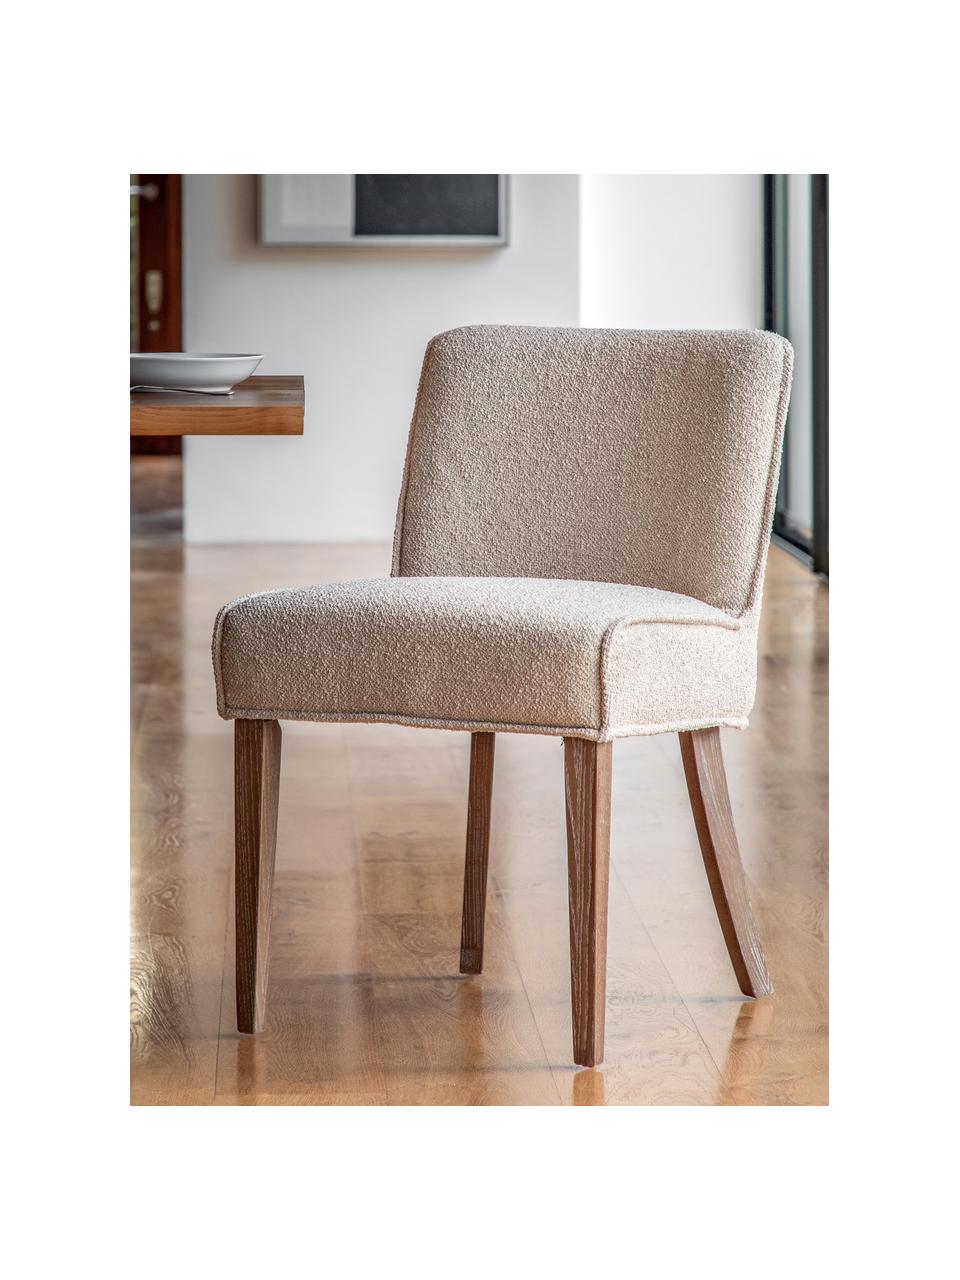 Krzesło tapicerowane Tarnby, 2 szt., Tapicerka: 100% poliester, Nogi: drewno dębowe, Jasnobeżowa tkanina, drewno dębowe, S 49 x G 59 cm